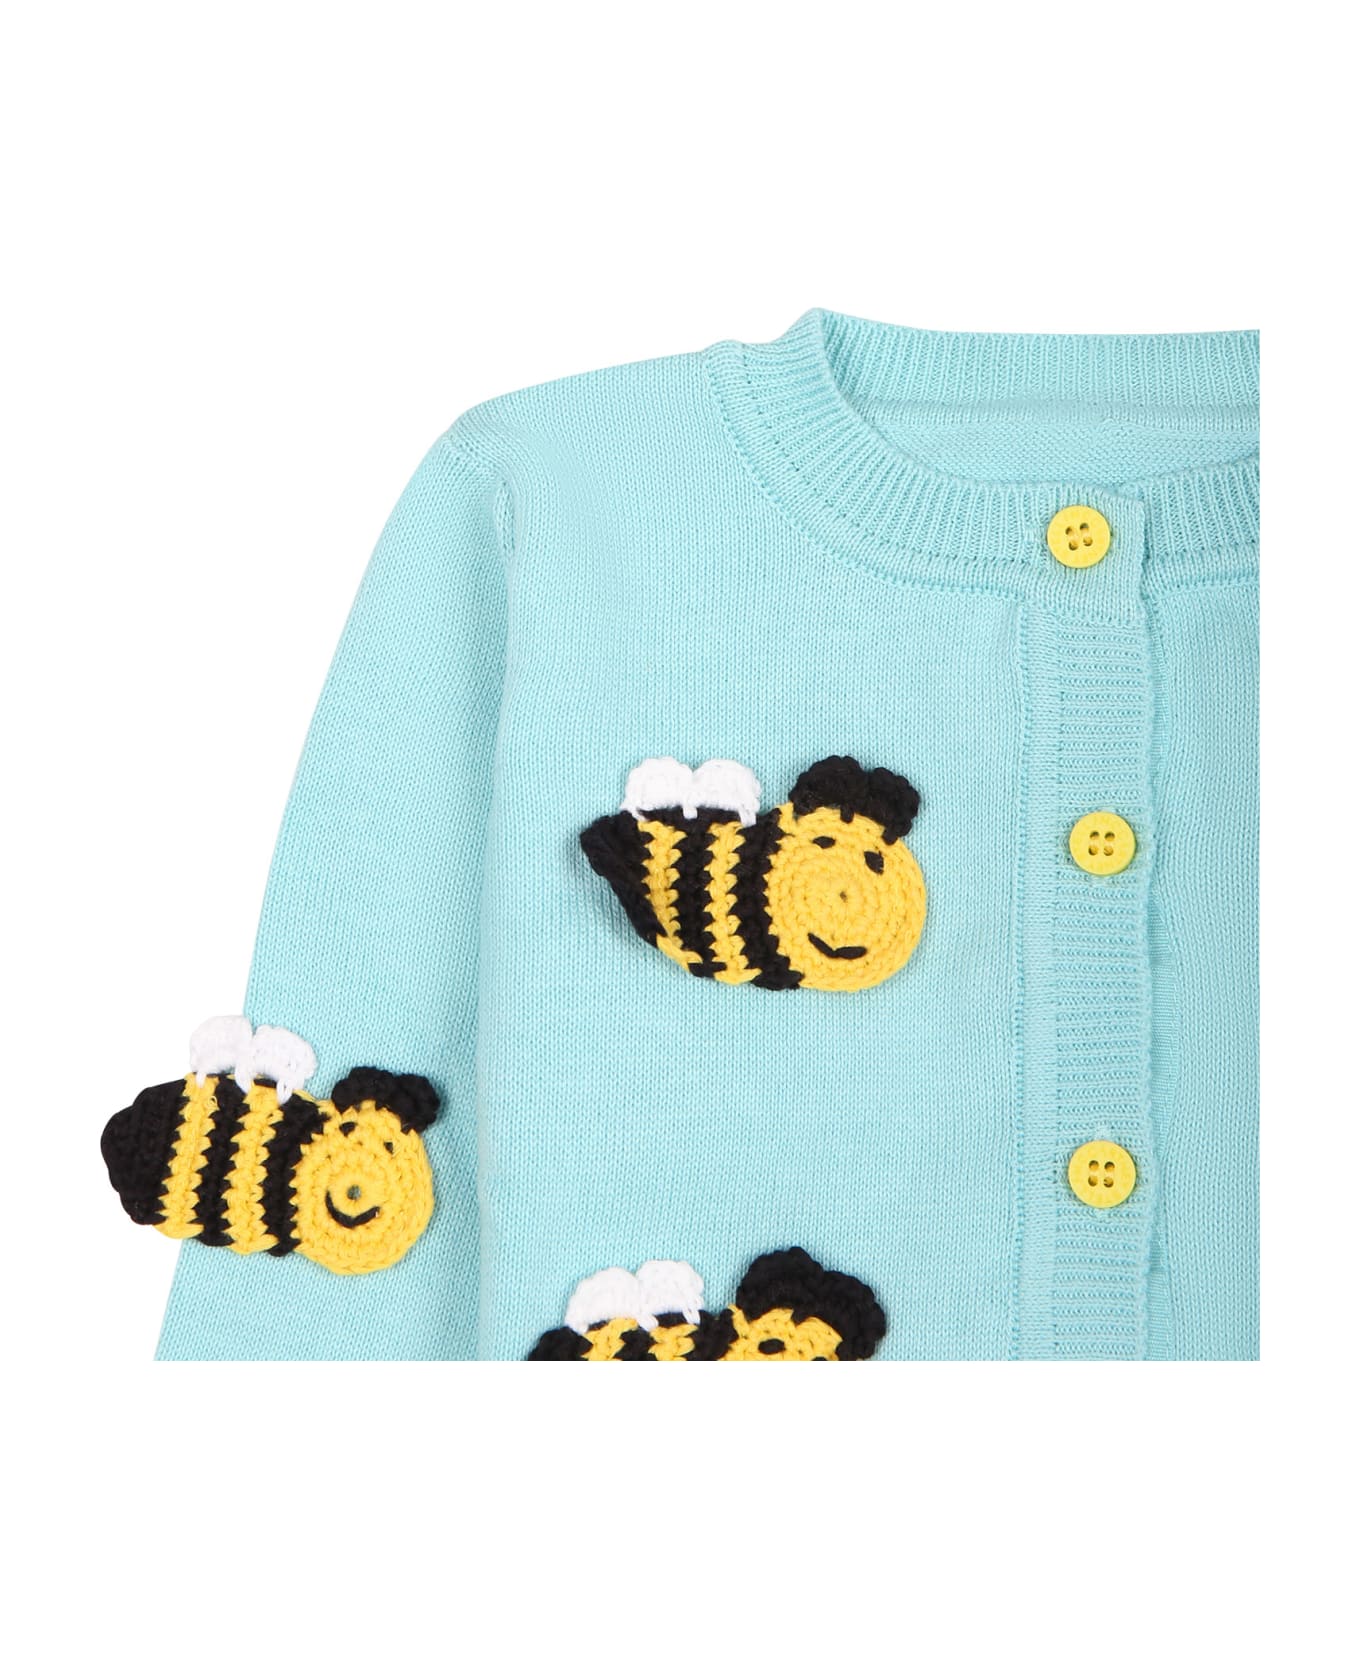 Stella McCartney Kids Light Blue Cardigan For Baby Girl With Bees - Light blue ニットウェア＆スウェットシャツ